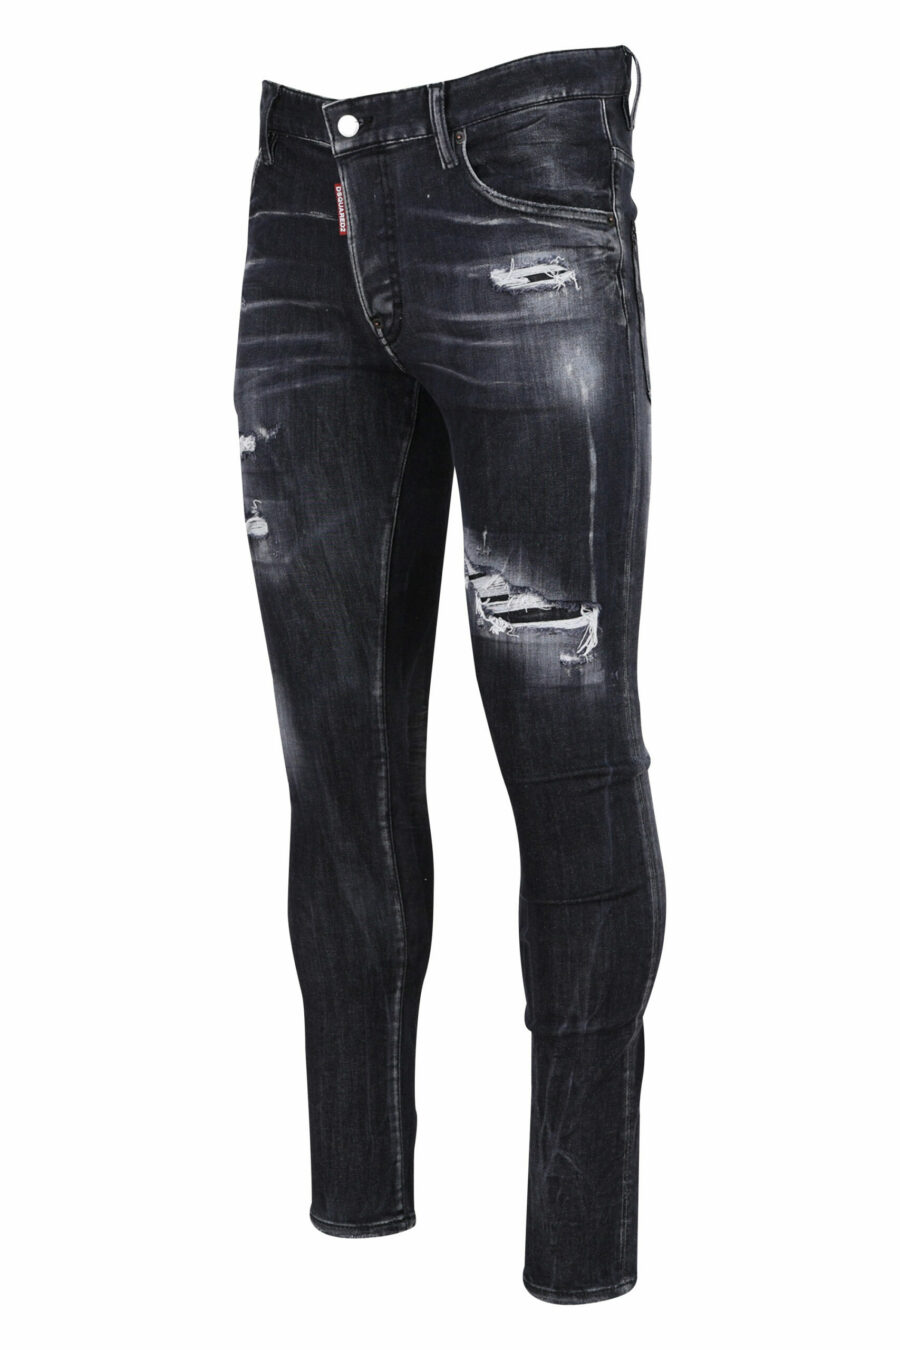 Jeans super twinkey noir semi-usé et déchiré - 8054148103088 1 échelle